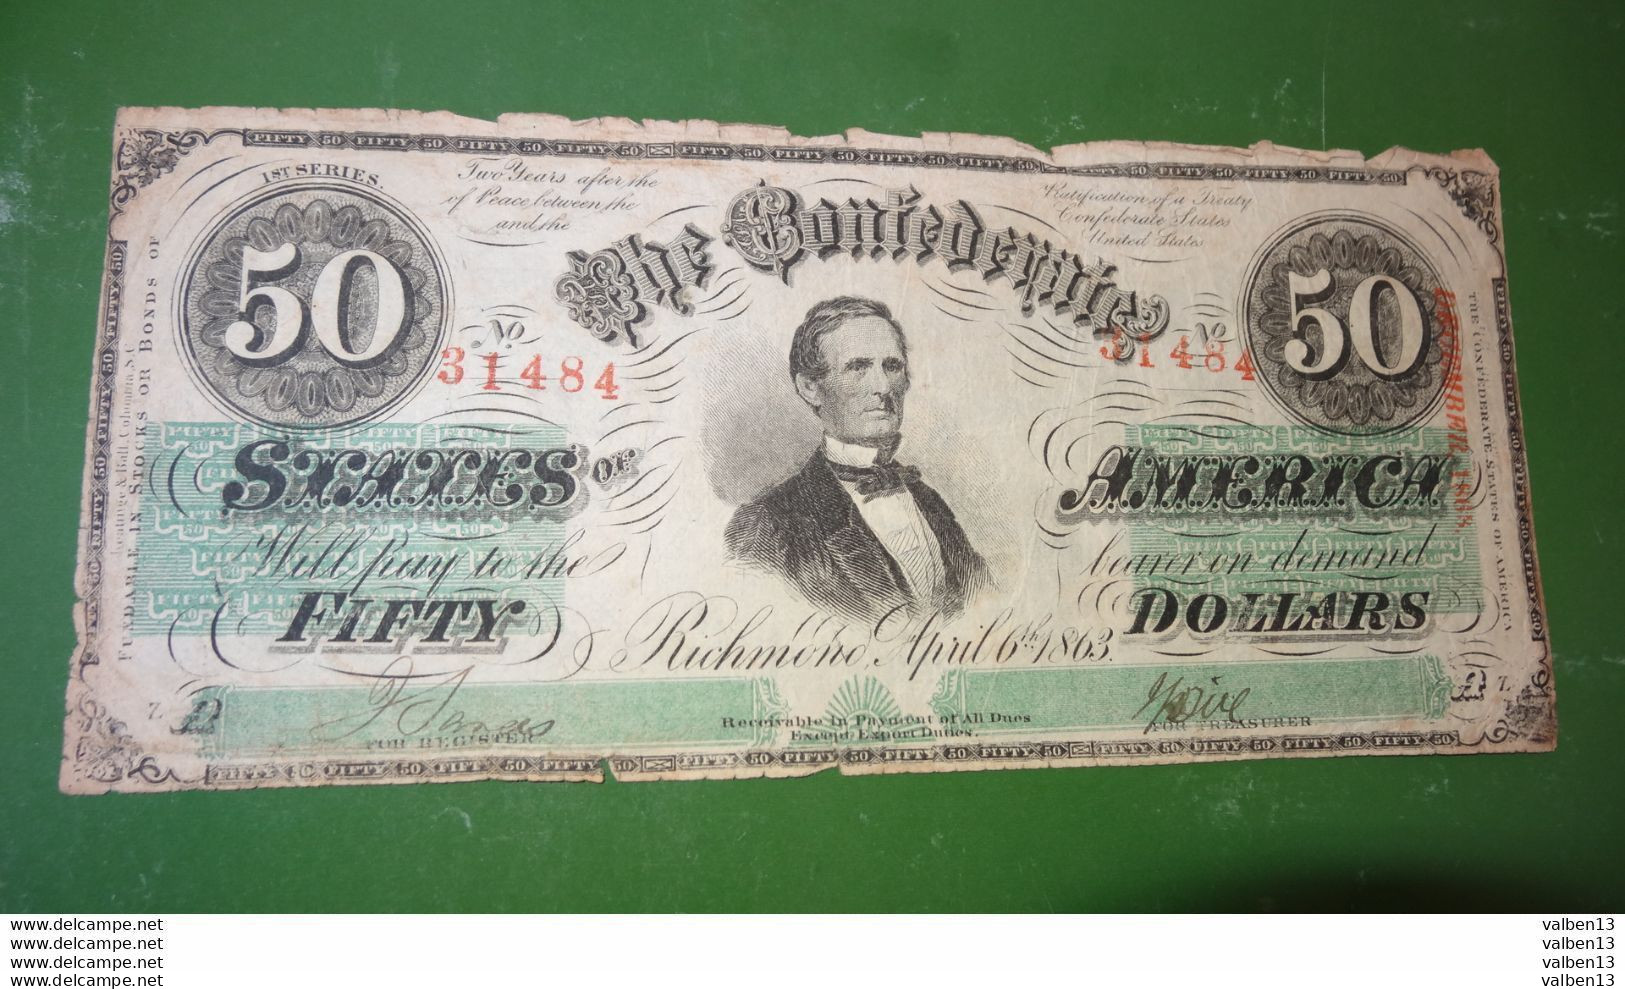 ETATS UNIS: Confederates States Of America. N° 31484, 50 Dollars. Date 06/04/1863 ........ Env.2 - Confederate (1861-1864)